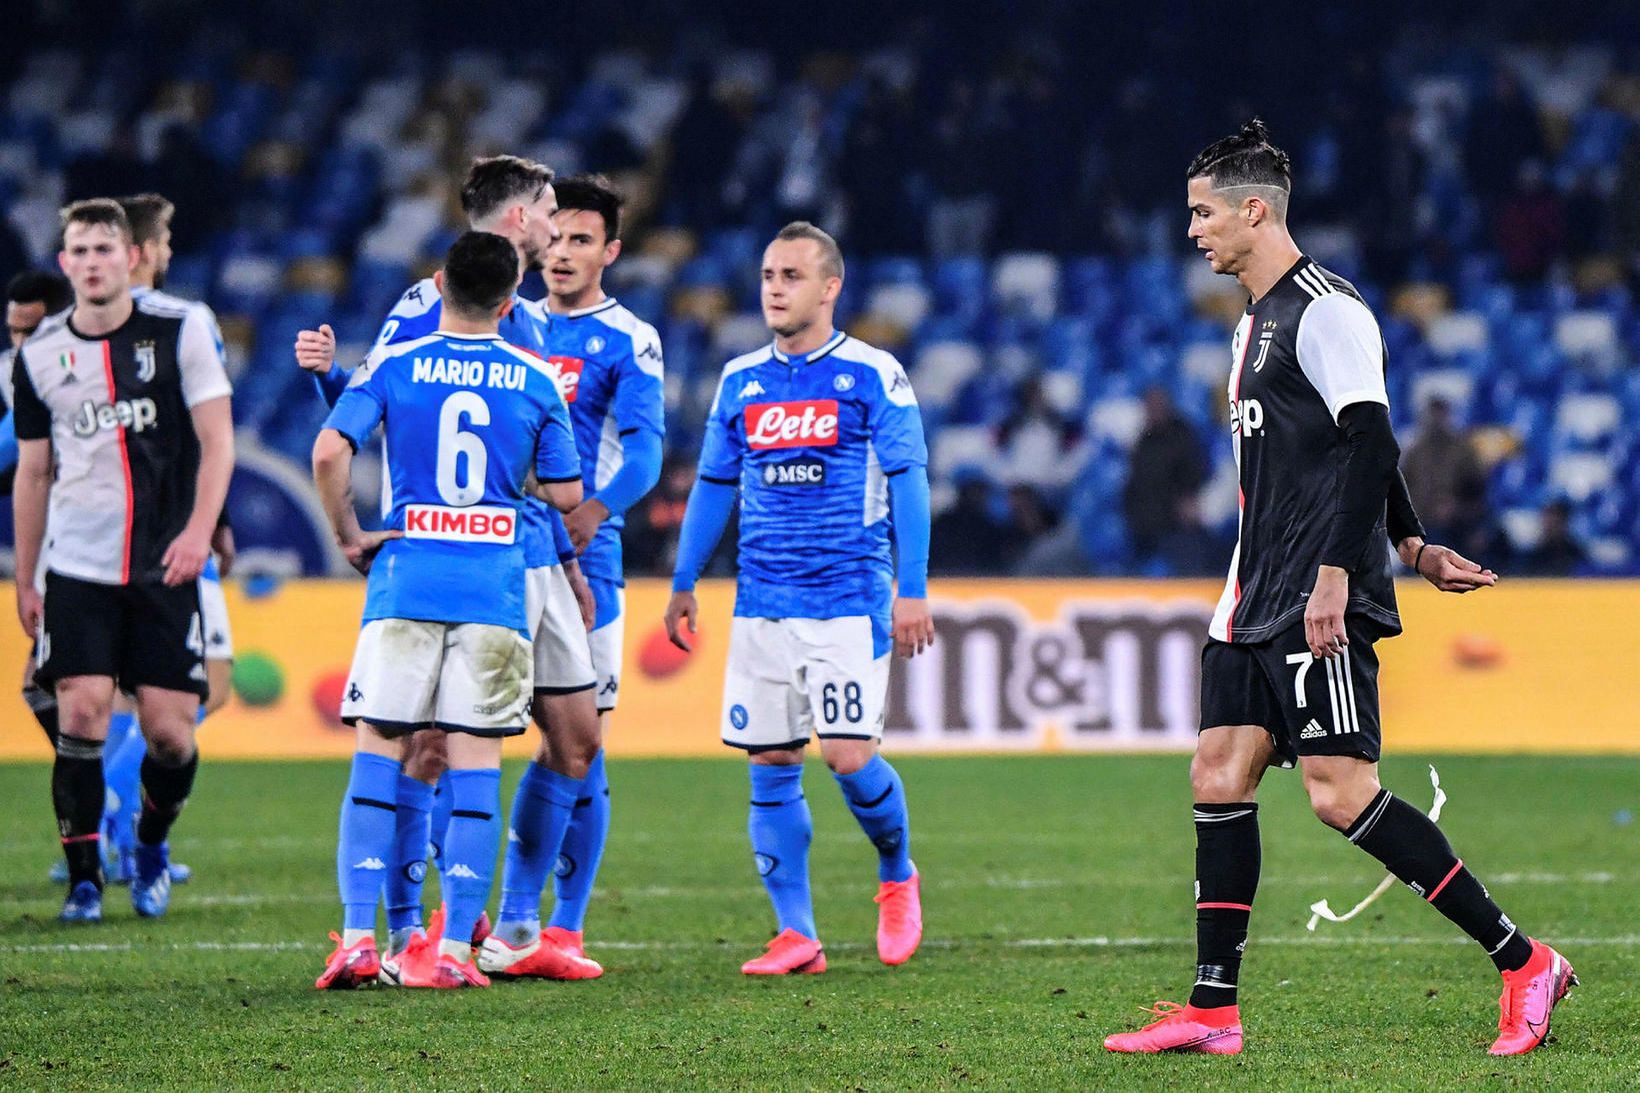 Leikmenn Napoli fagna en Ronaldo gengur súr af velli.